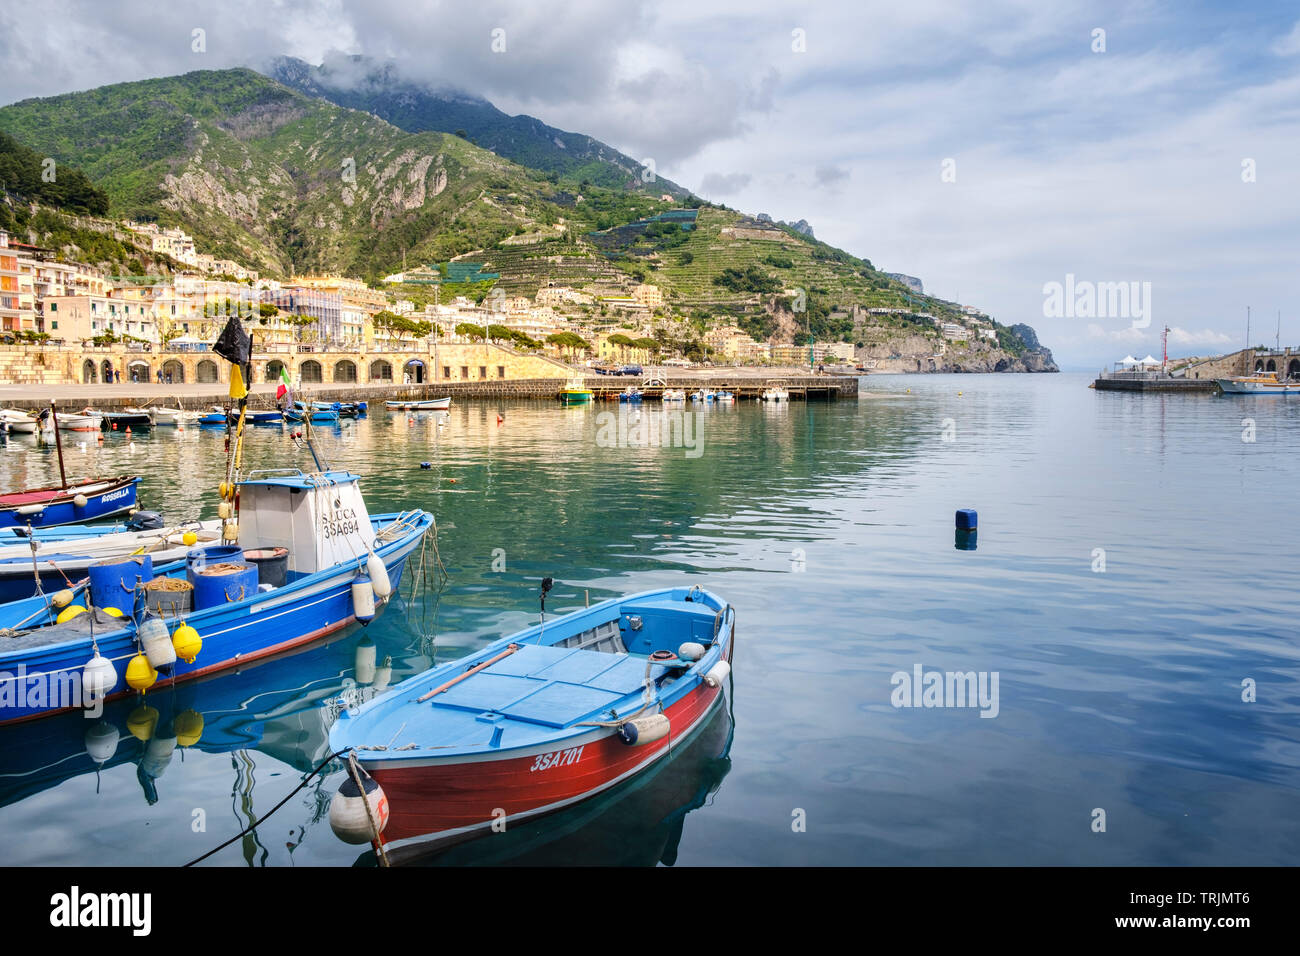 Bateaux amarrés dans le port de Viareggio, sur la côte amalfitaine, de Campanie en Italie sud Banque D'Images